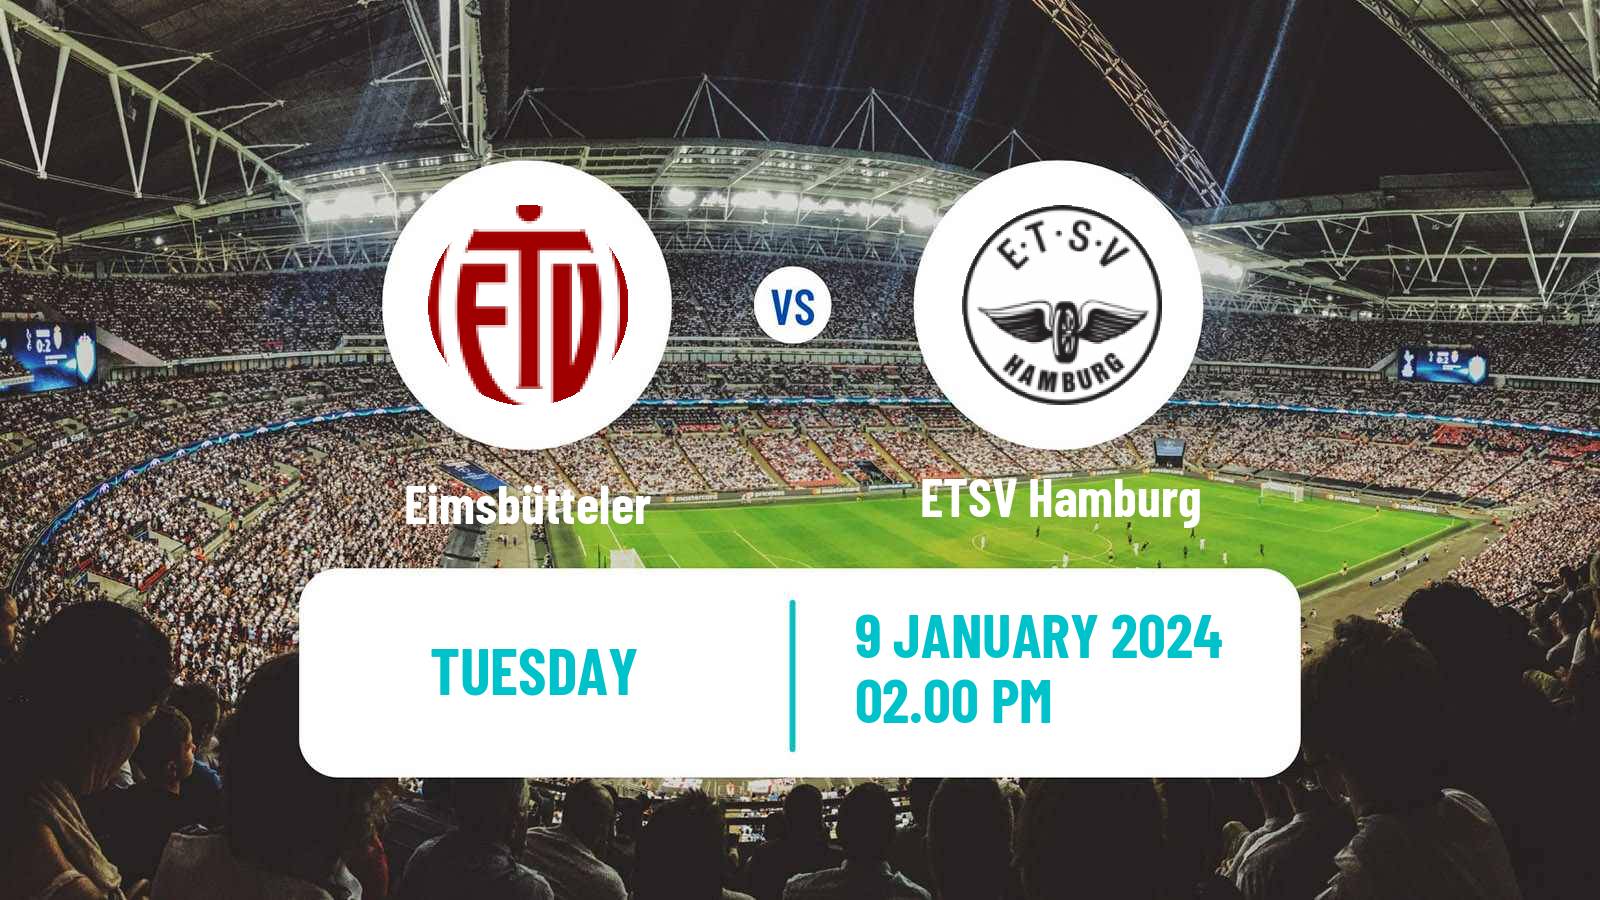 Soccer Club Friendly Eimsbütteler - ETSV Hamburg